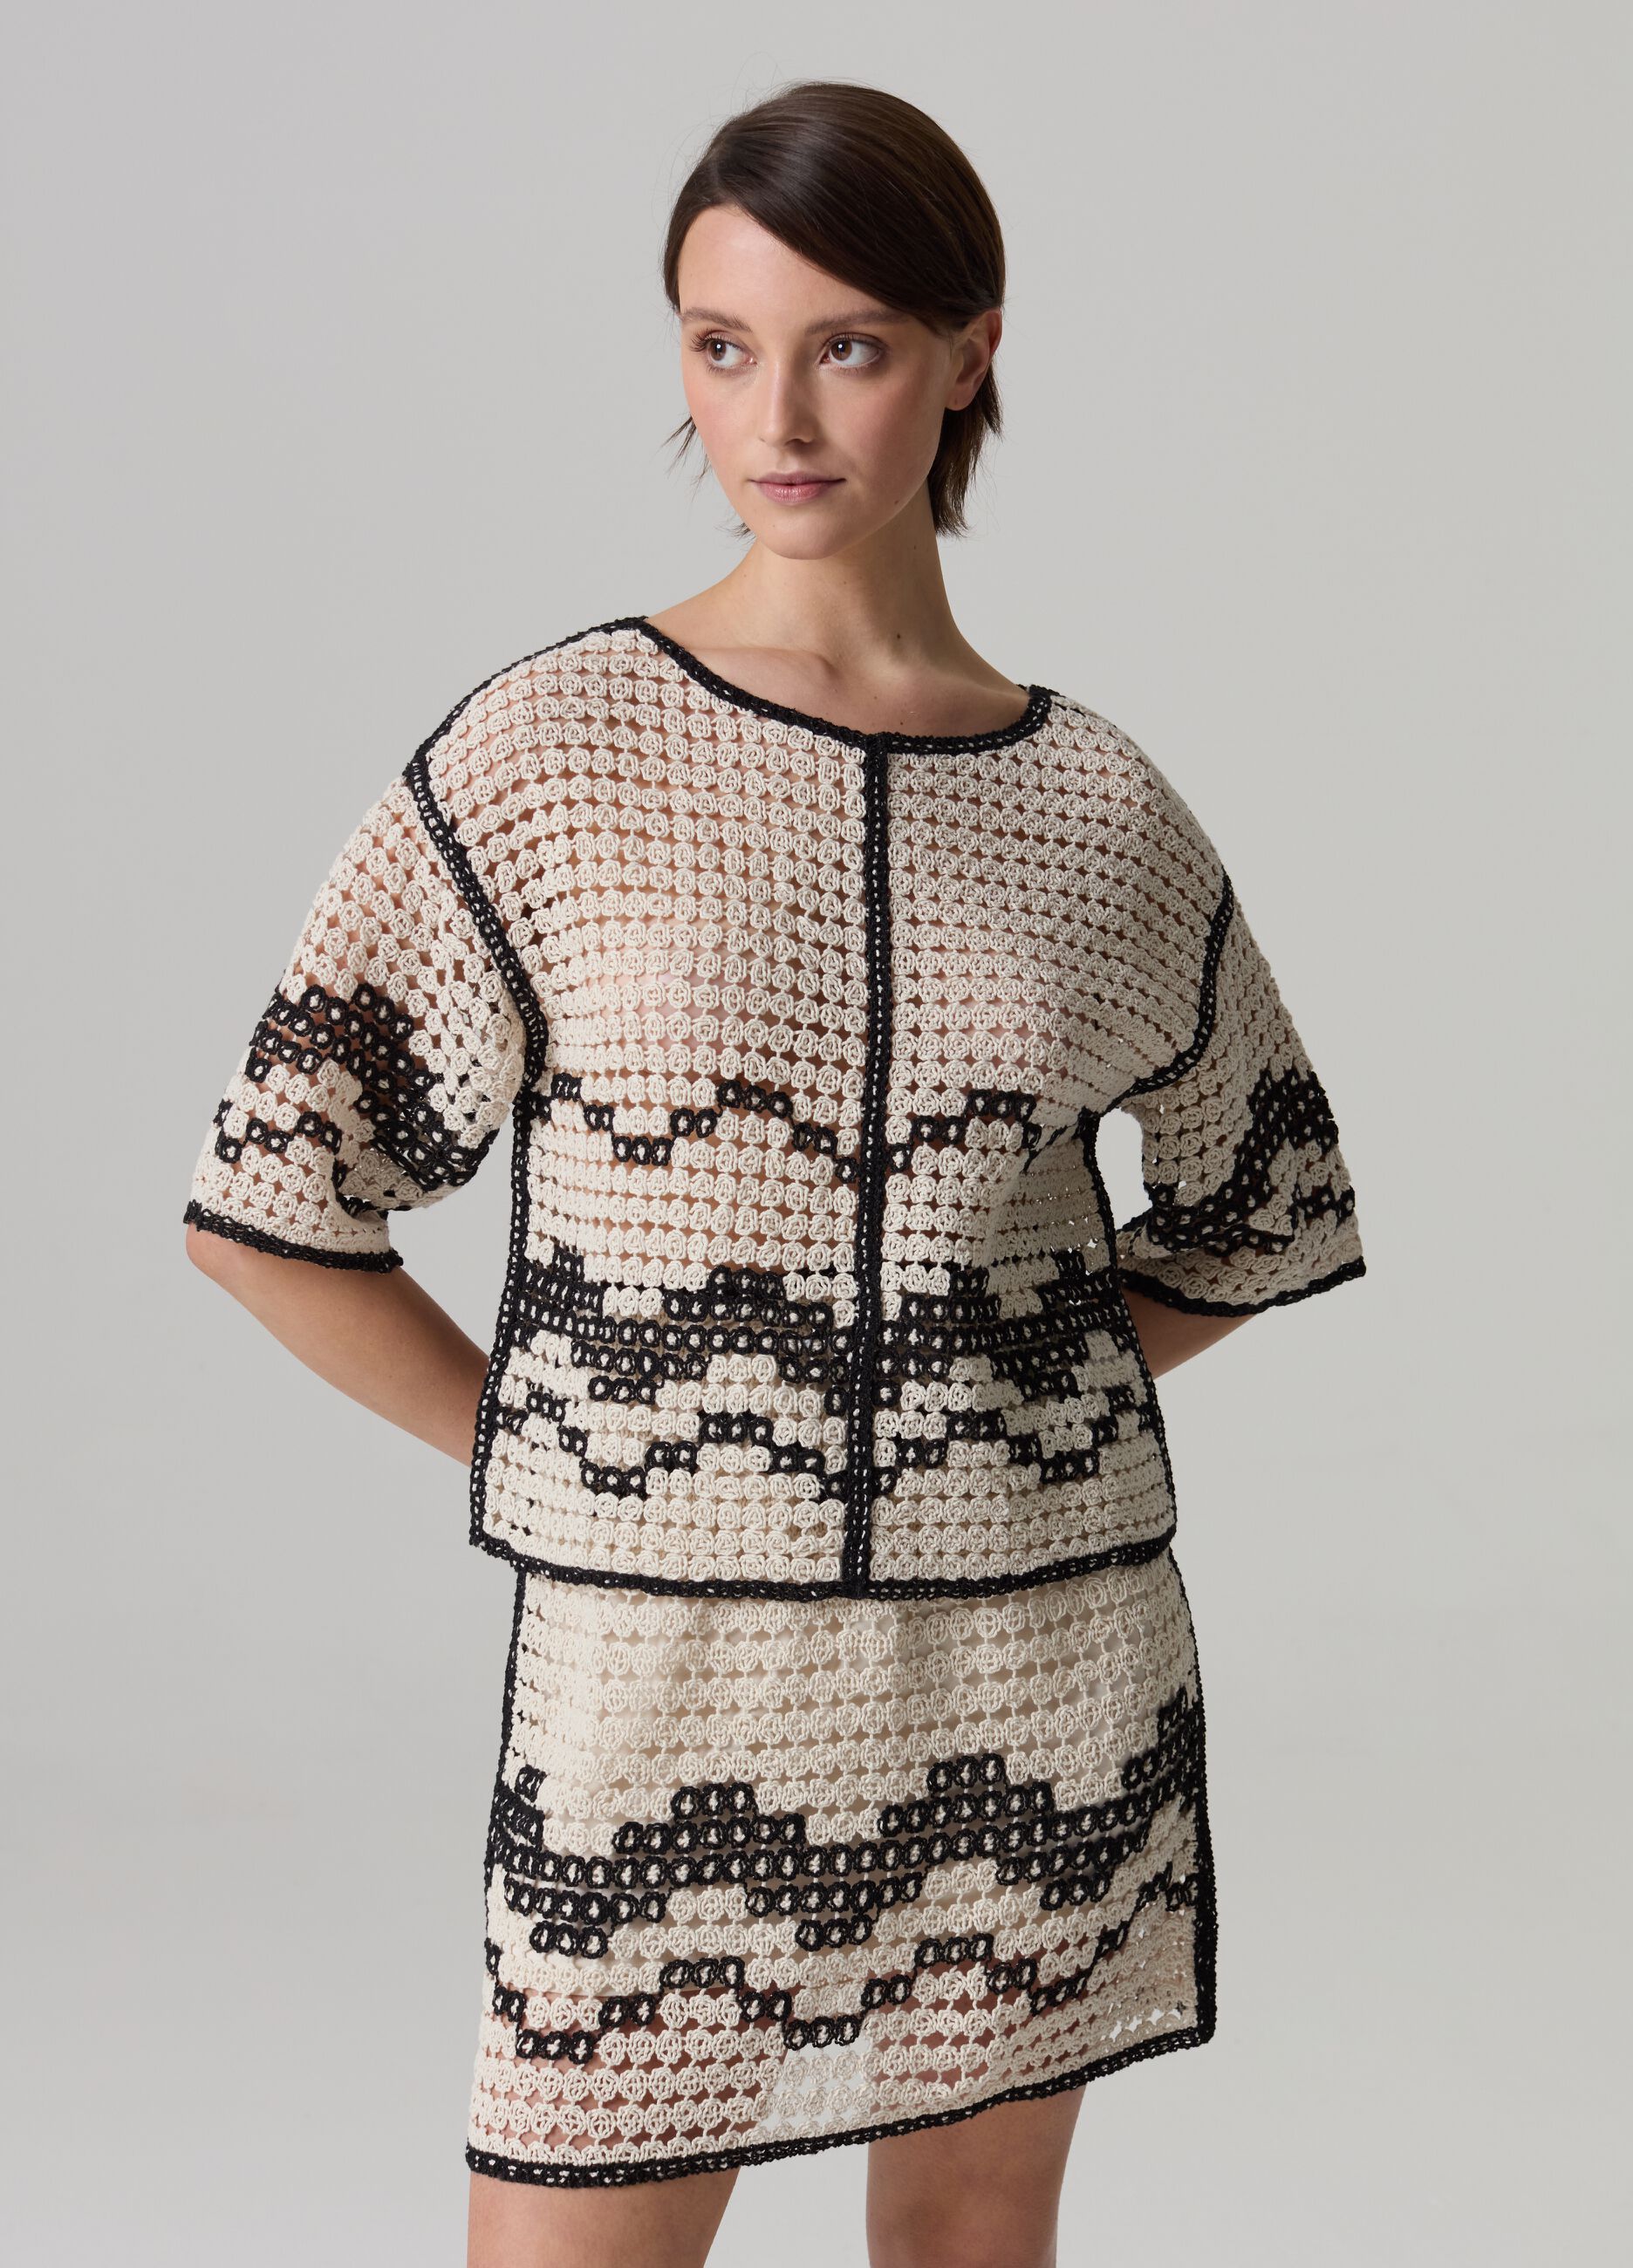 Crochet top with wavy motif